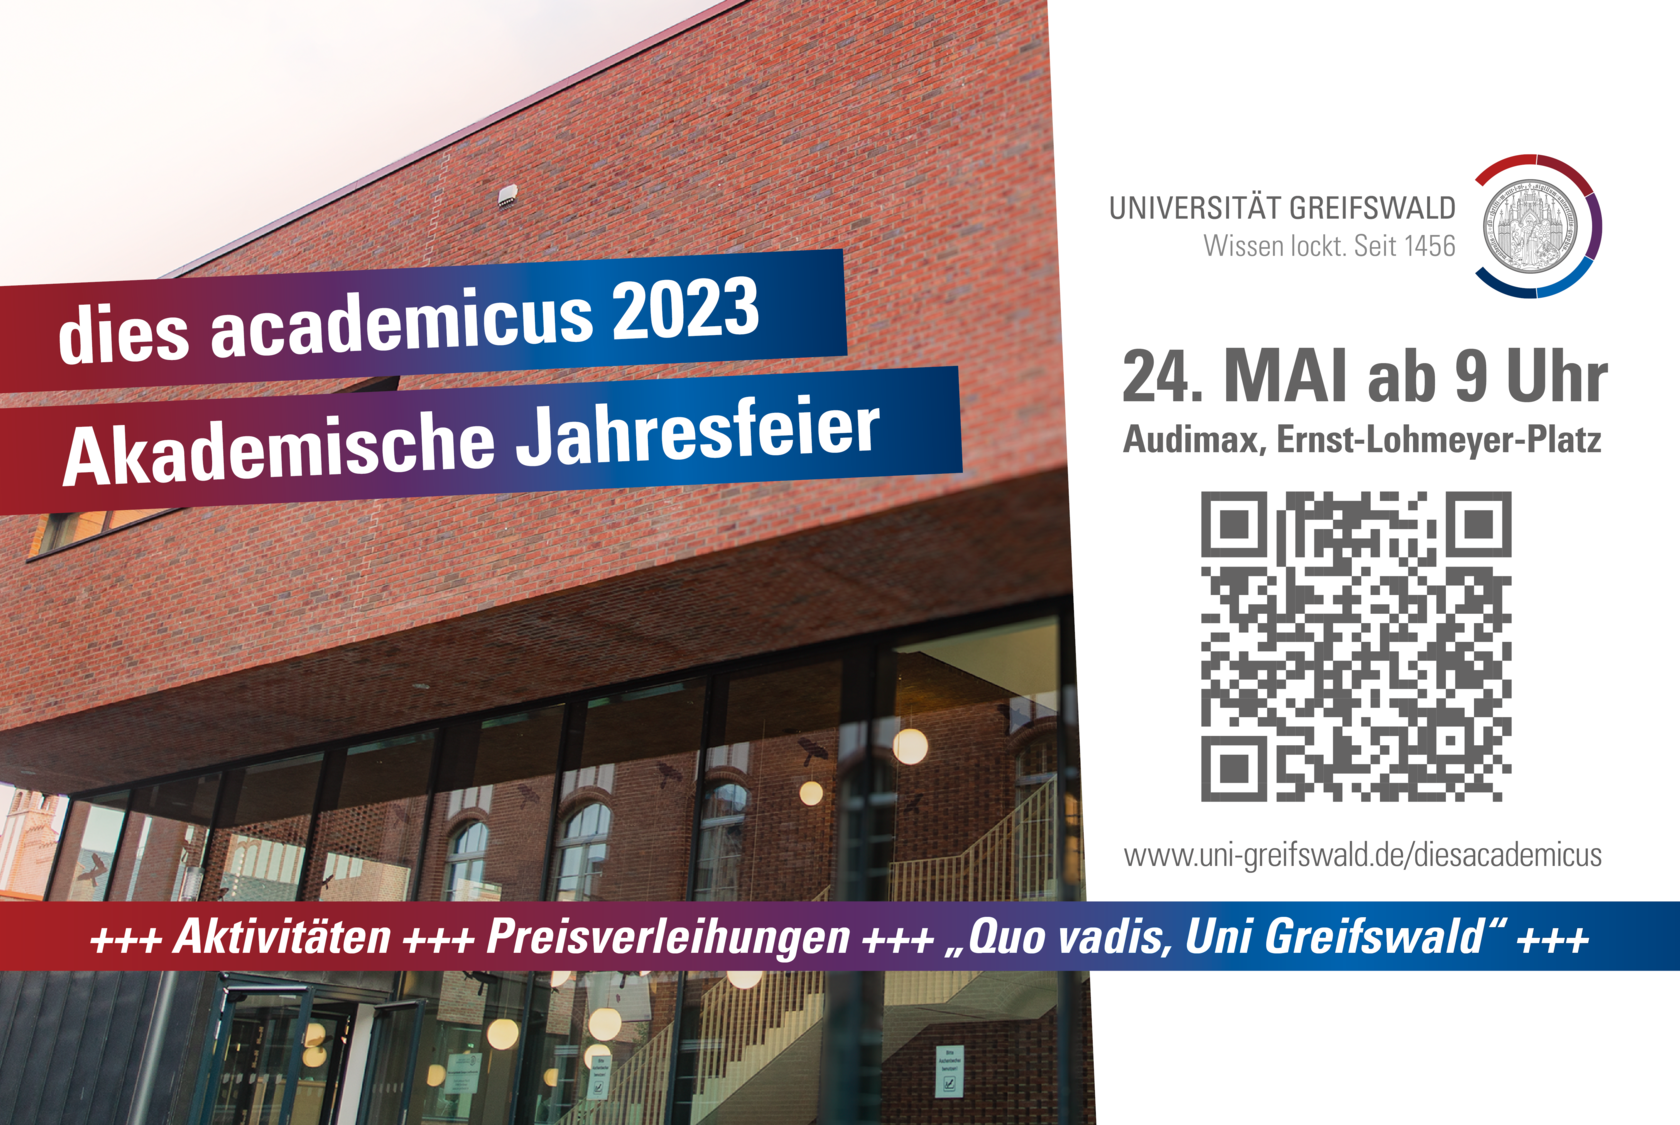 Der dies academicus 2023 an der Universität Greifswald